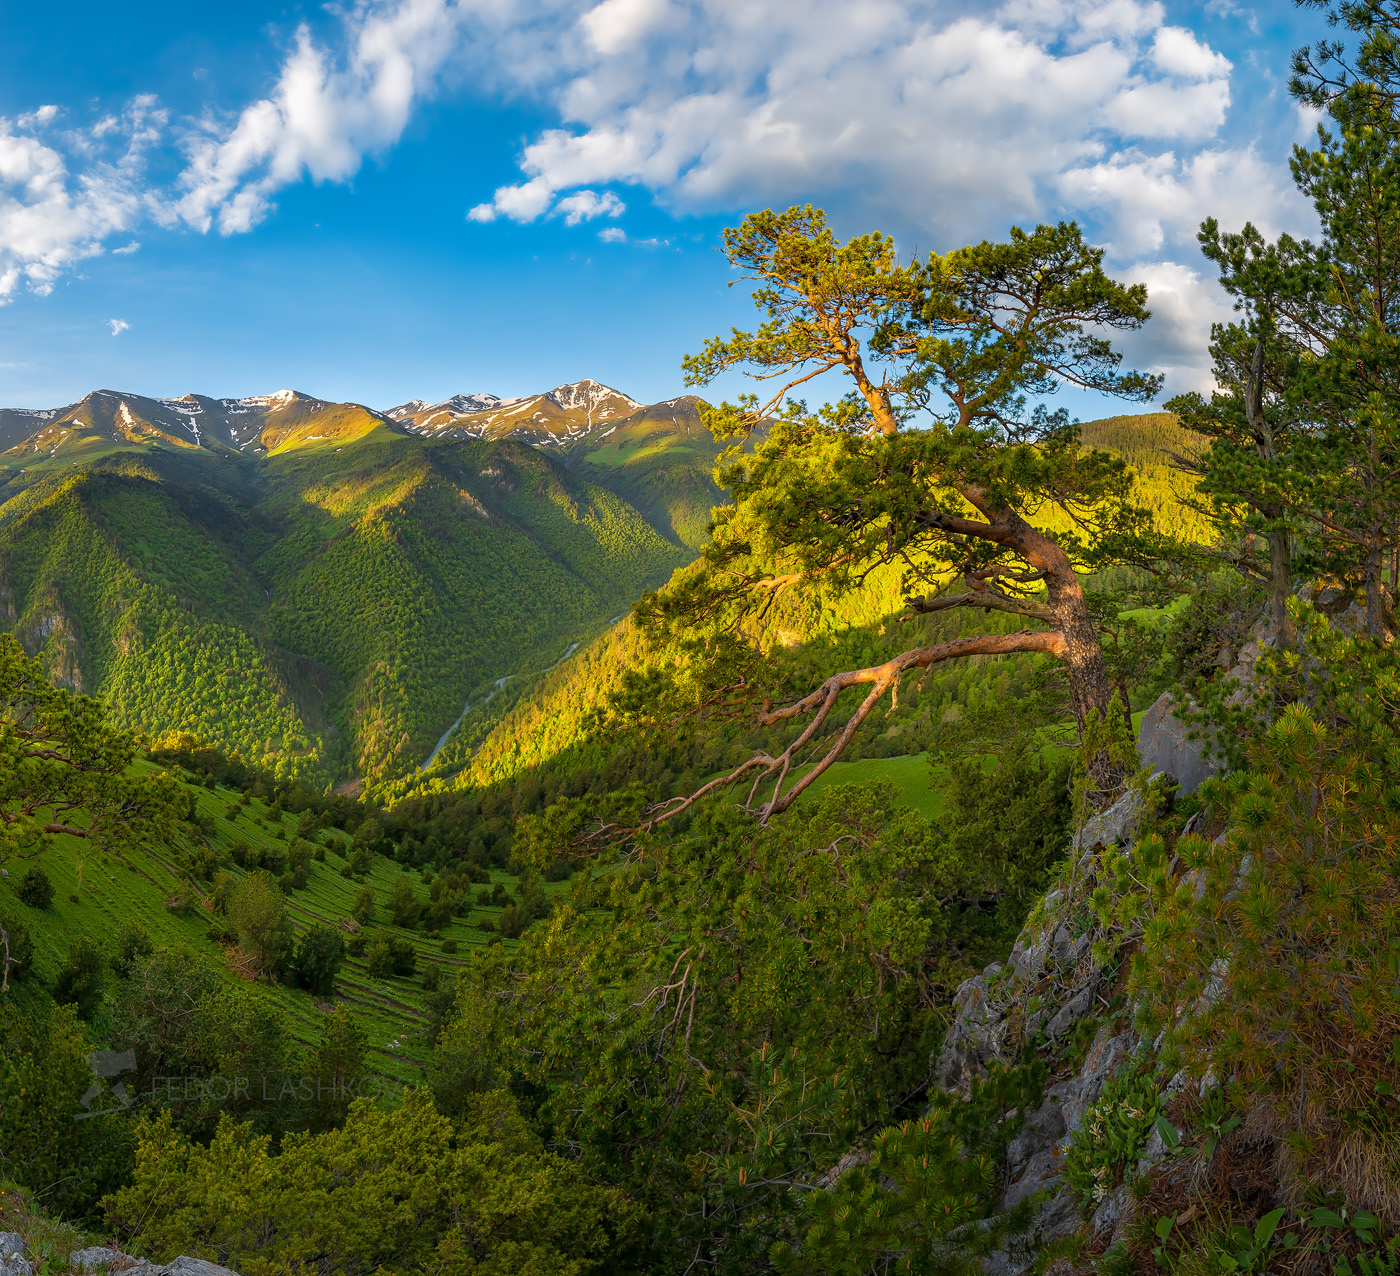 Сосны Архыза Северный Кавказ Горы гора Архыз хребет горное сосна сосны лес деревья лесное дерево путешествие скалы